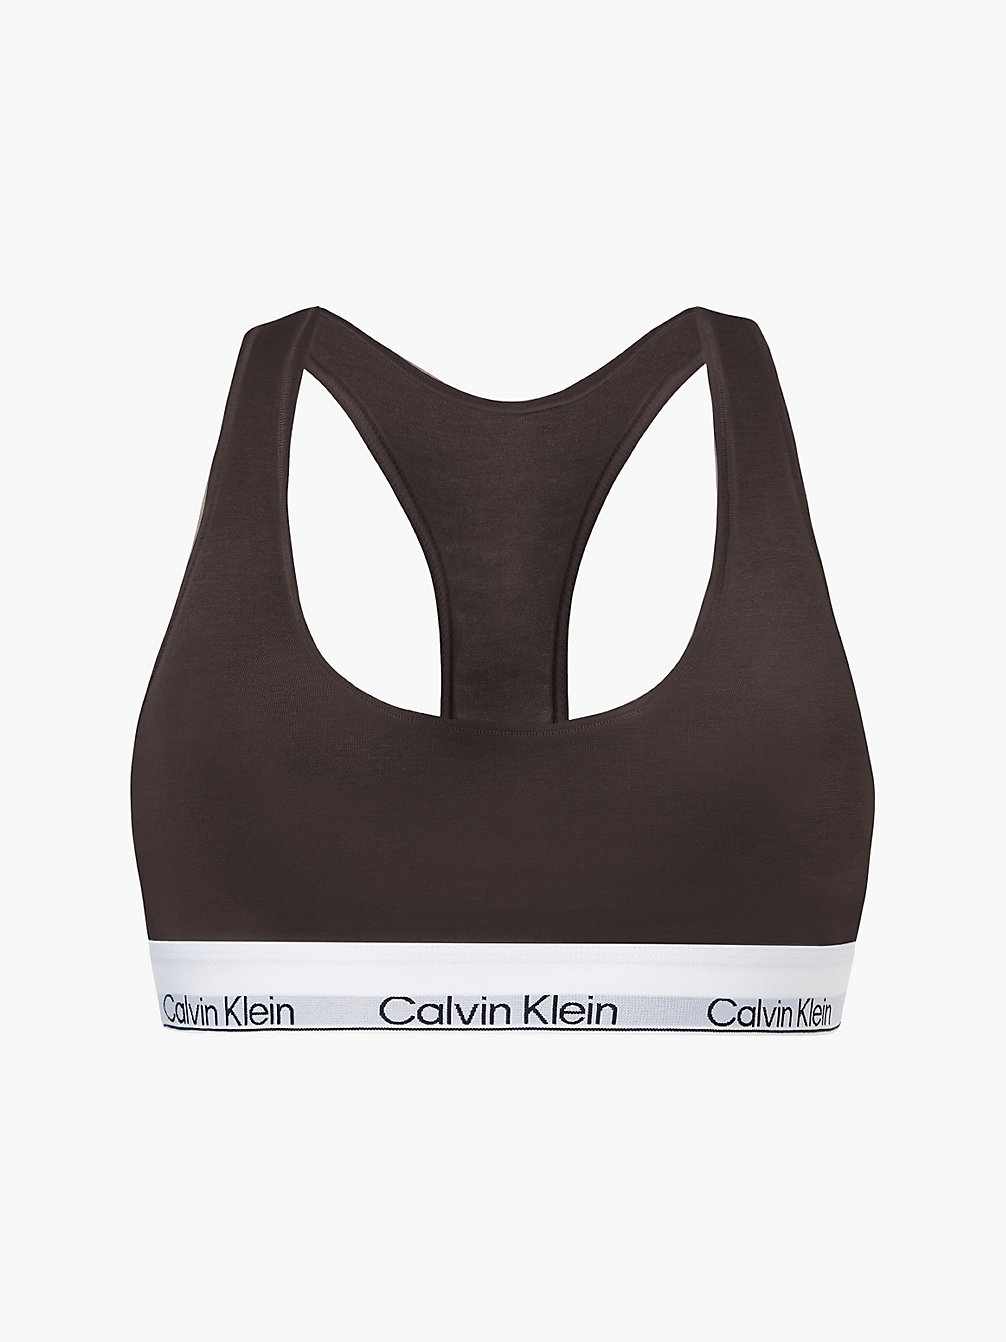 WOODLAND Bralette – Modern Cotton undefined Damen Calvin Klein